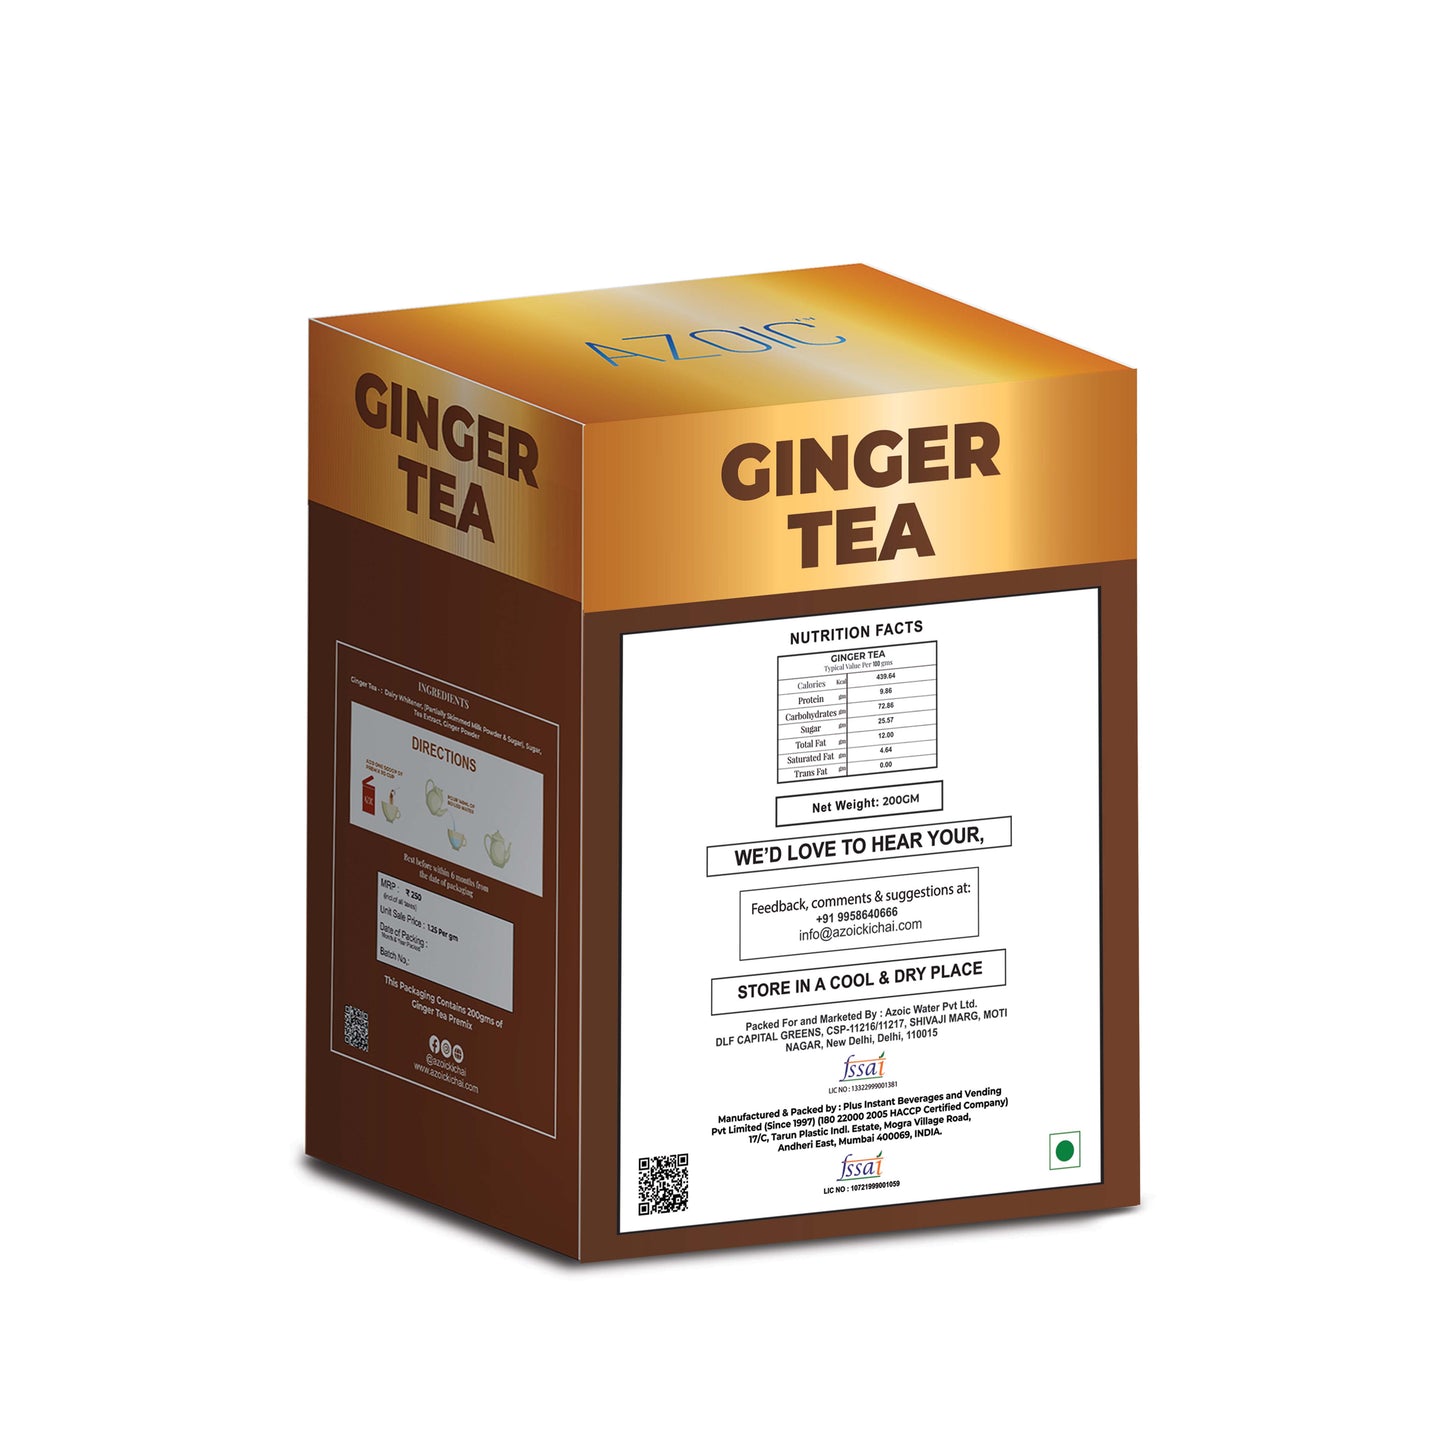 Ginger Tea 200gm